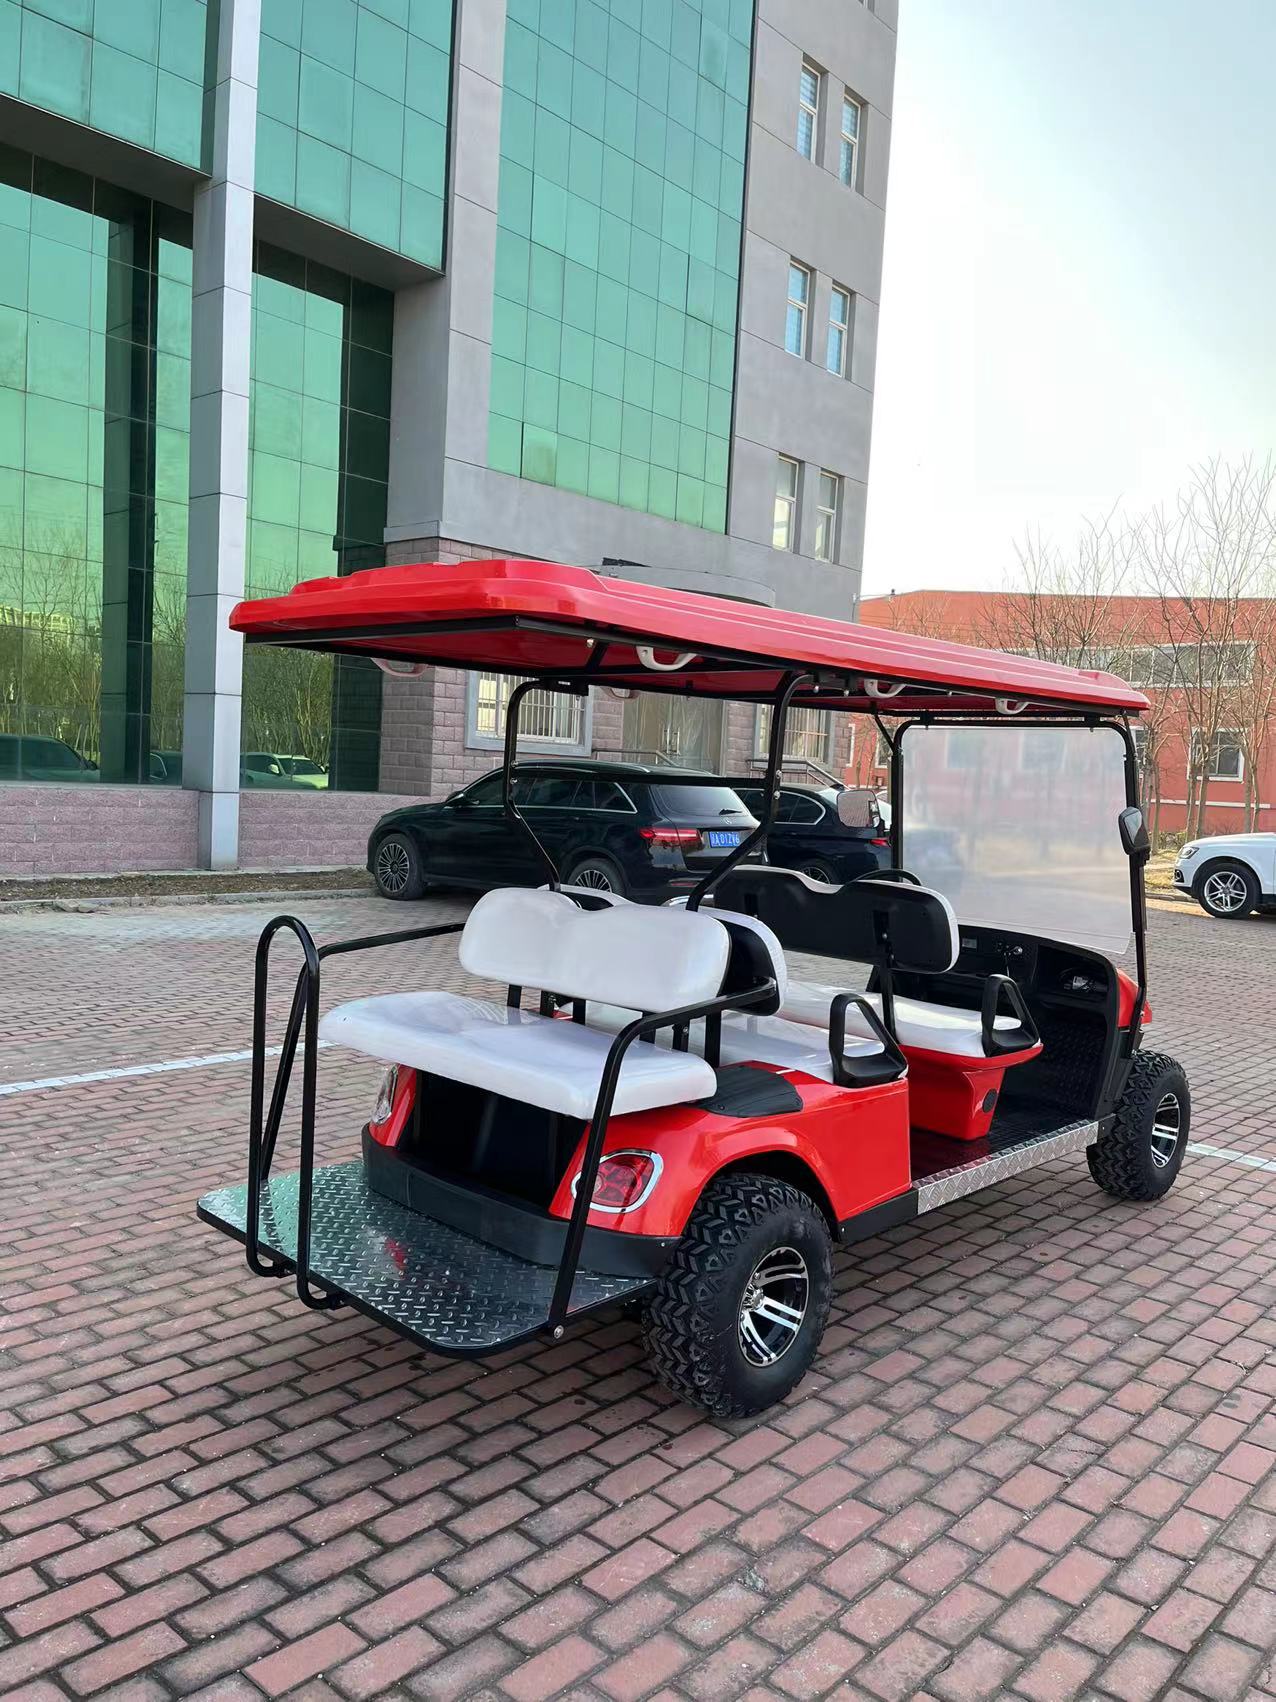 4+2 Seats Electric Golf Cart